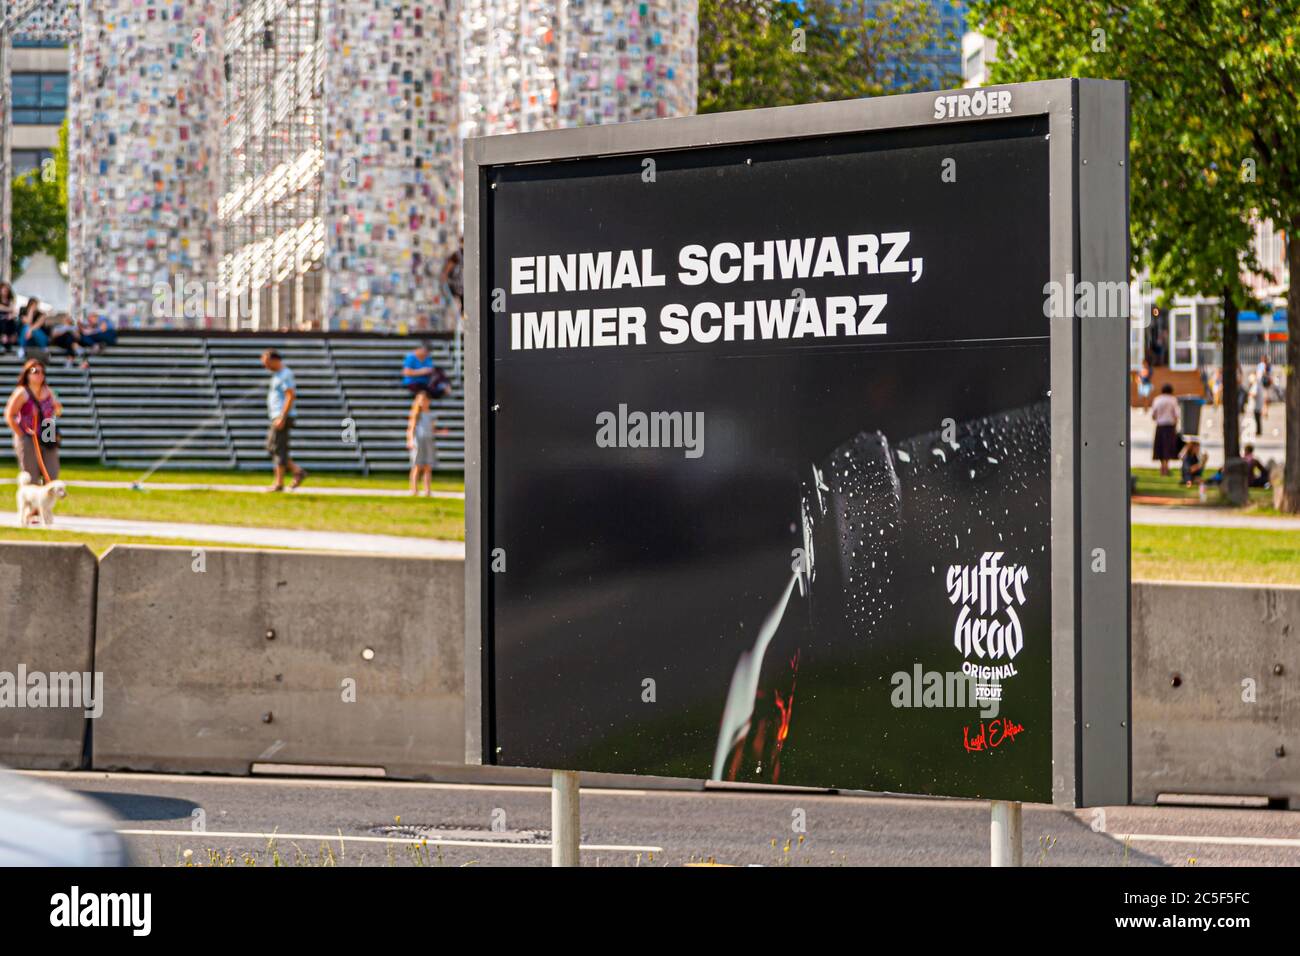 Werbung für ein schwarzes Bier vor Parthen of Books auf der Documenta 2017 in Kassel. Die argentinische Künstlerin Marta Minujin hat unzählige Bücher über einen Parthenon auf einem Gerüst aufgestellt Stockfoto